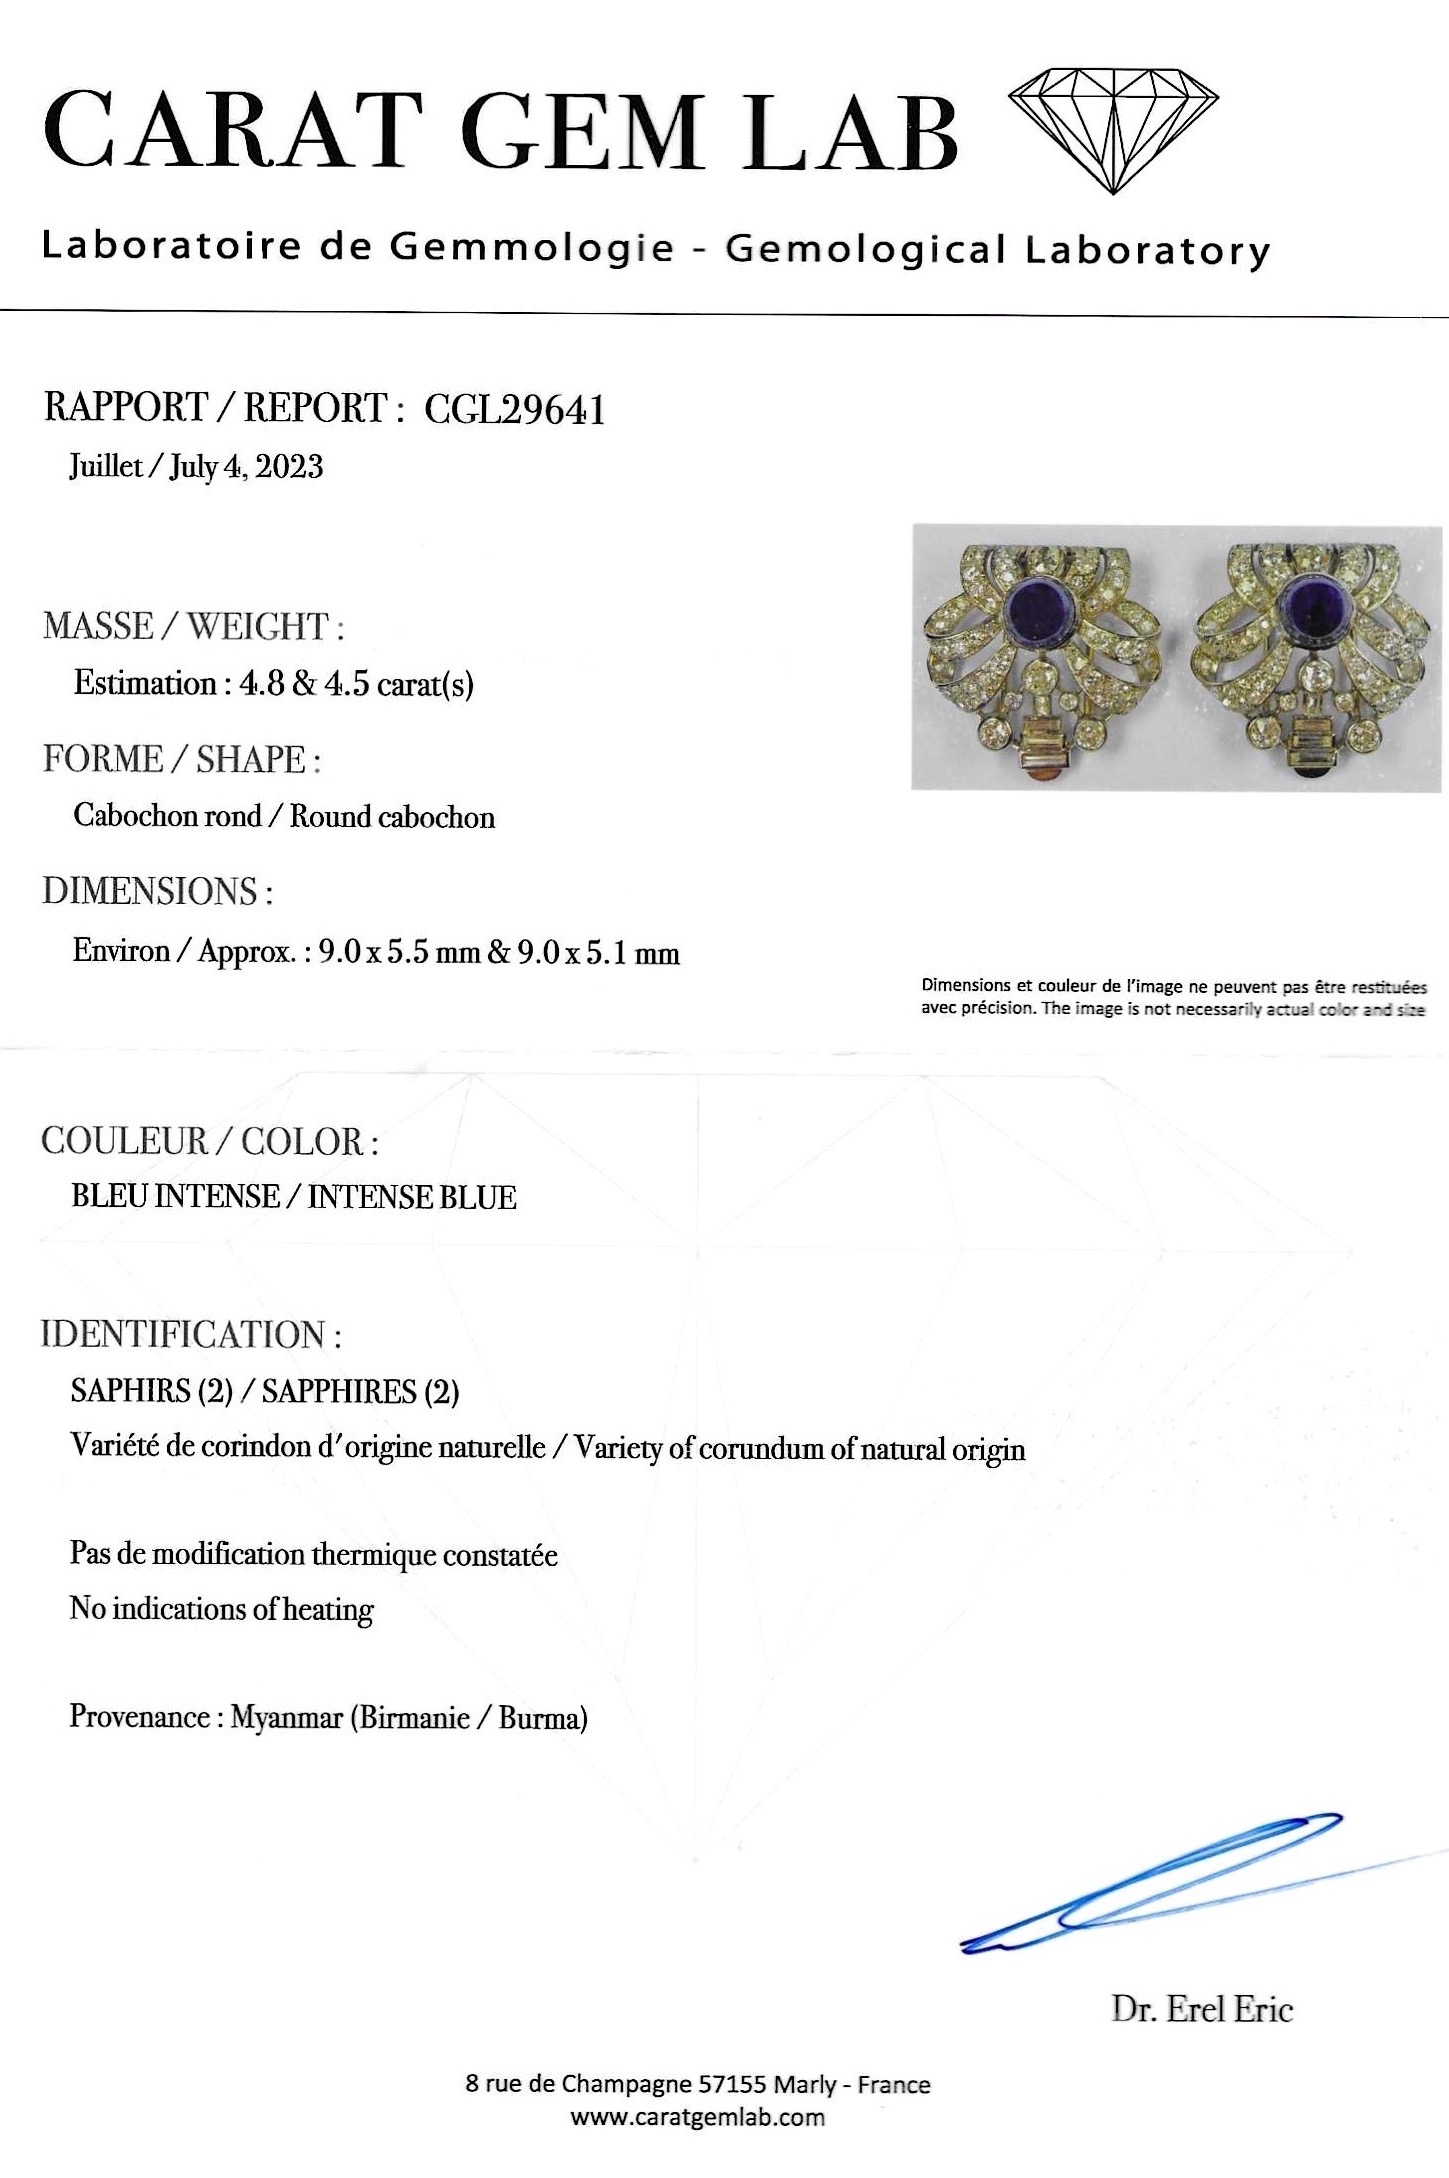 Importante broche double-clip, platine, 2 saphirs birmans non chauffés de 4,8 et 4,5 carats (certificat laboratoire) et diamants, 2,80 carats. Travail Art déco vers 1930.-3